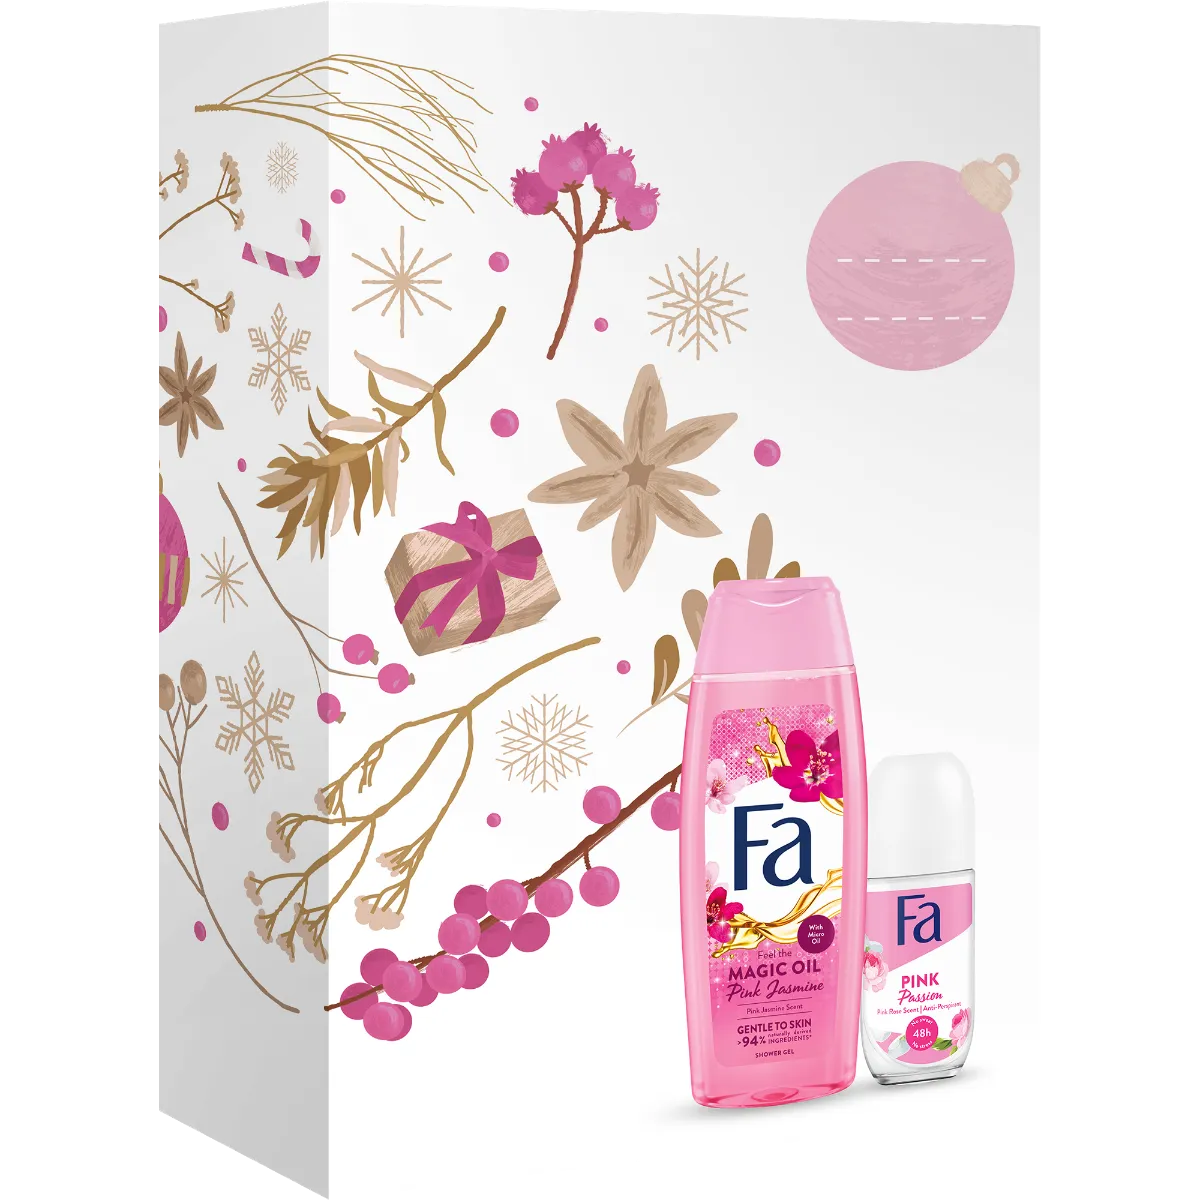 Fa zestaw kosmetyków żel pod prysznic Magic Oil Pink Jasmin + dezodorant w kulce Pink Passion, 250 ml + 50 ml